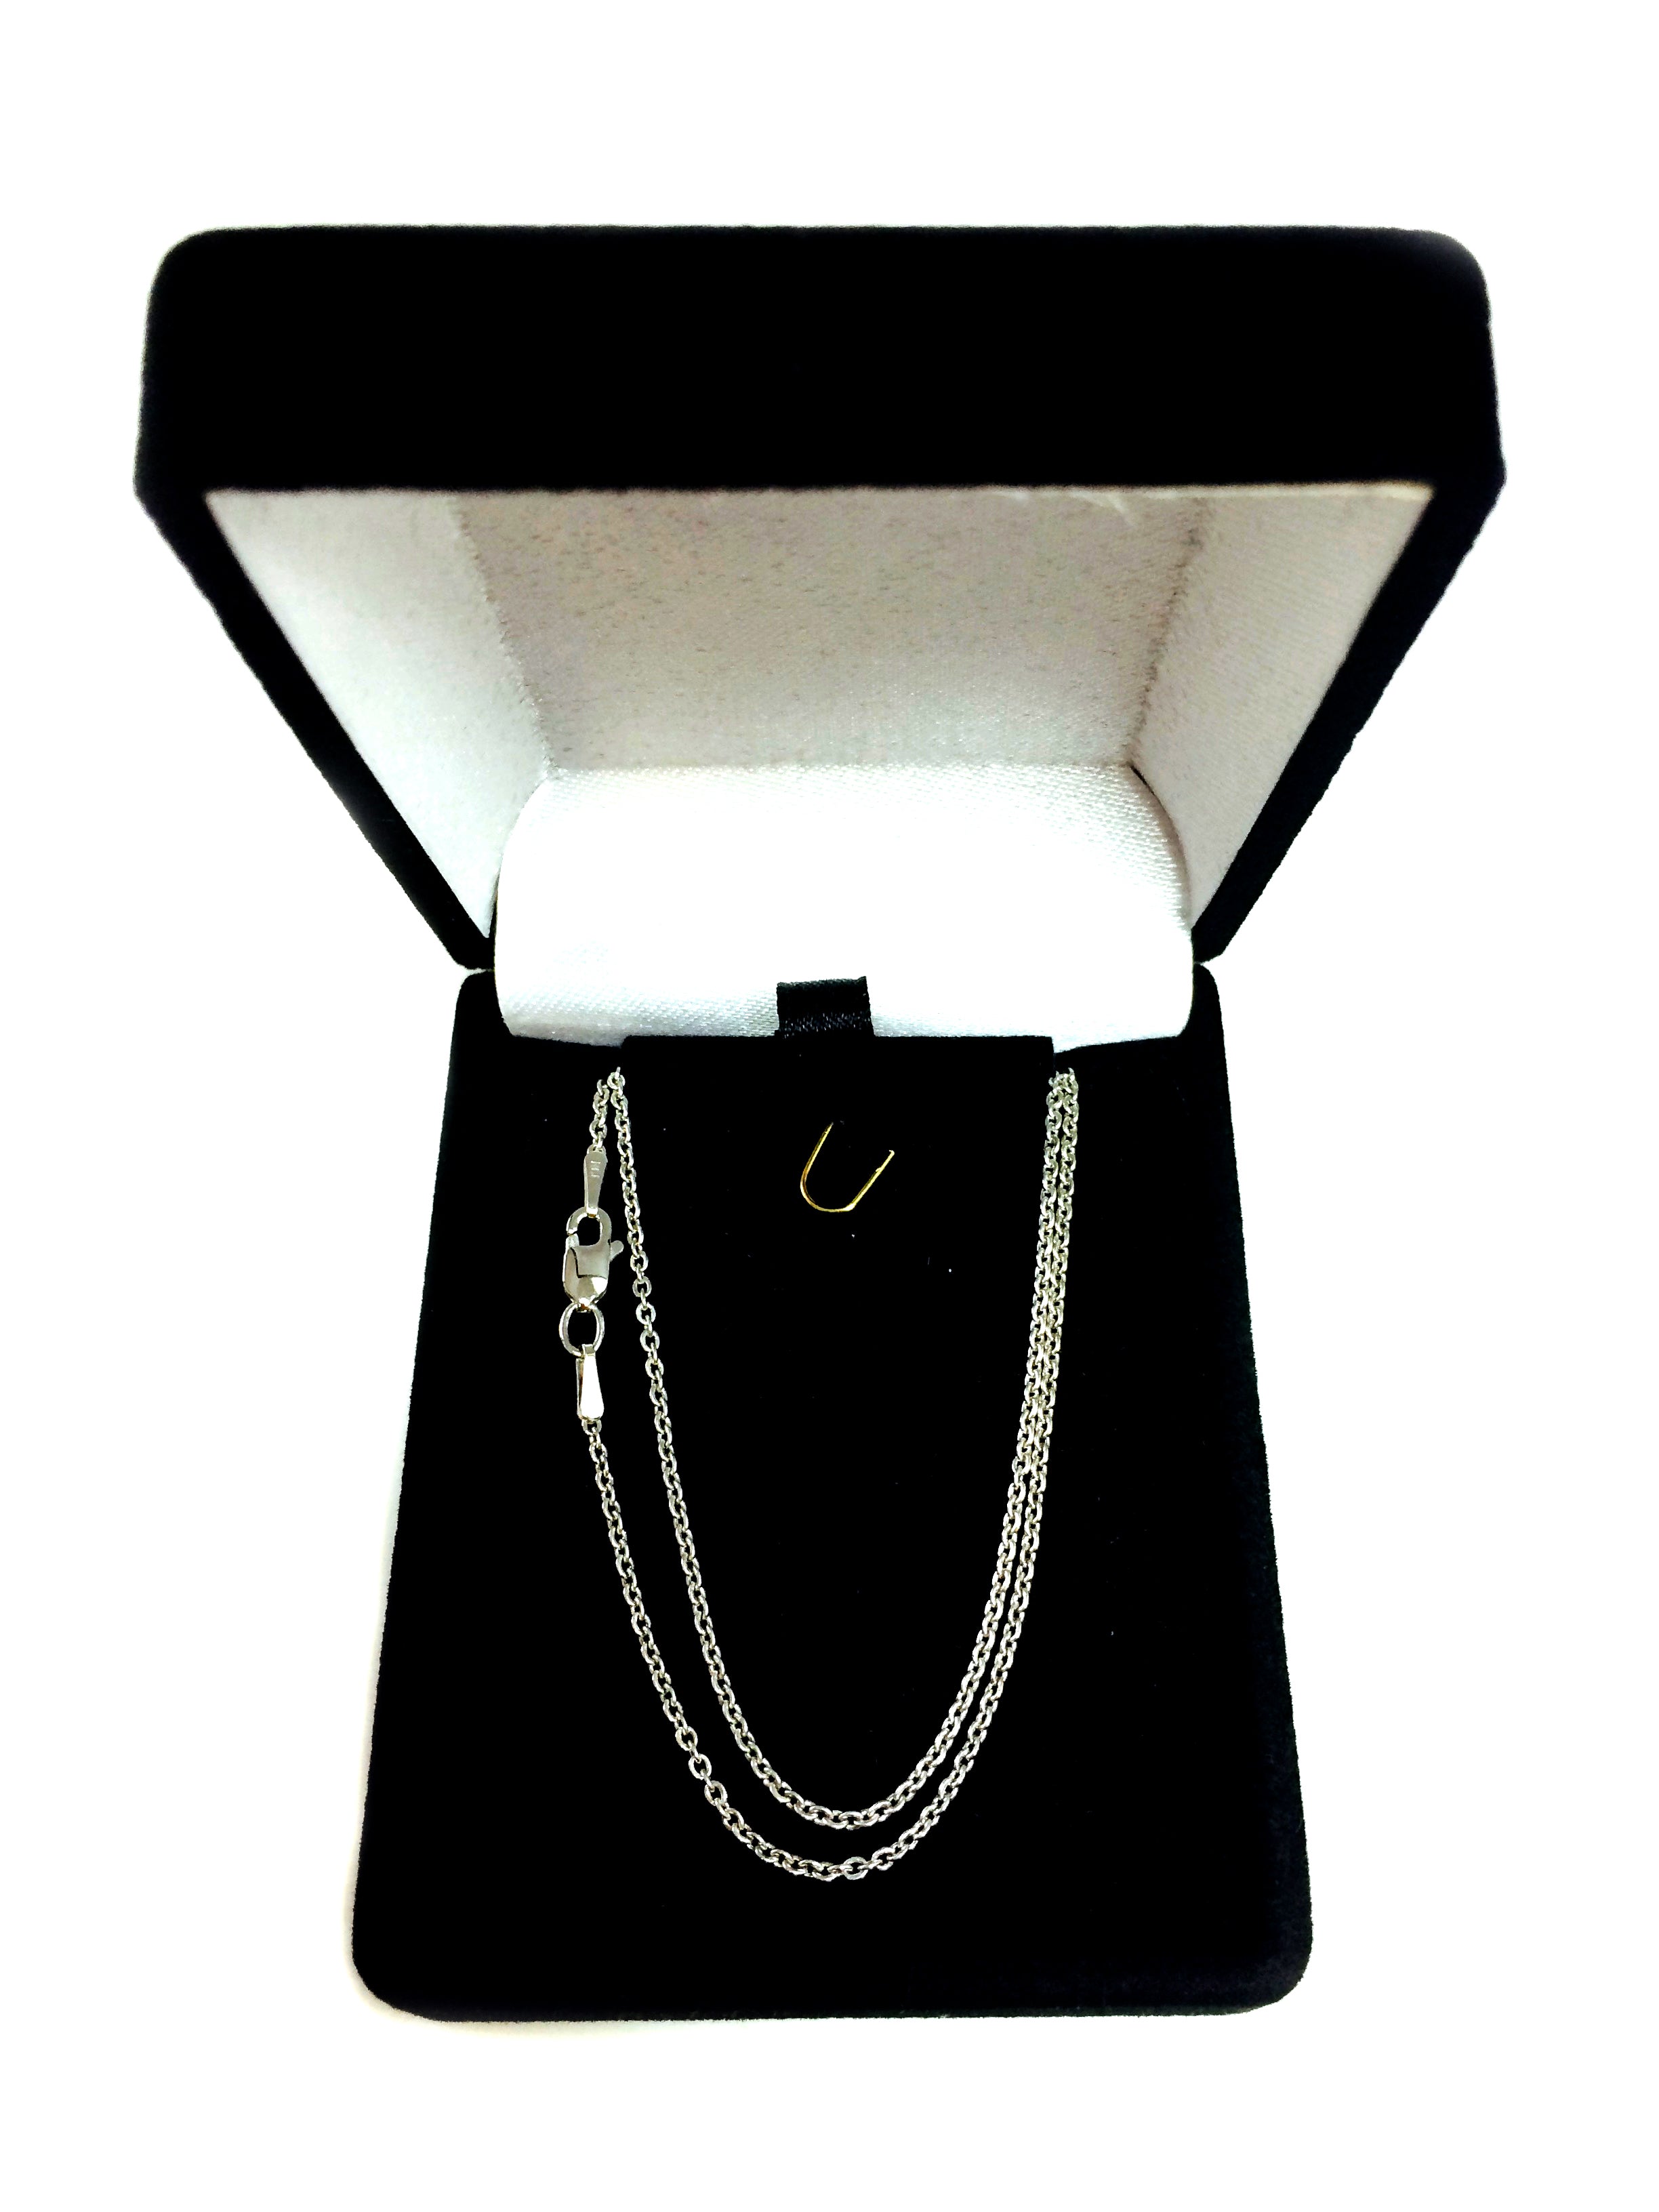 Collar de cadena con eslabones tipo cable de oro blanco de 14 k, joyería fina de diseño de 1,1 mm para hombres y mujeres